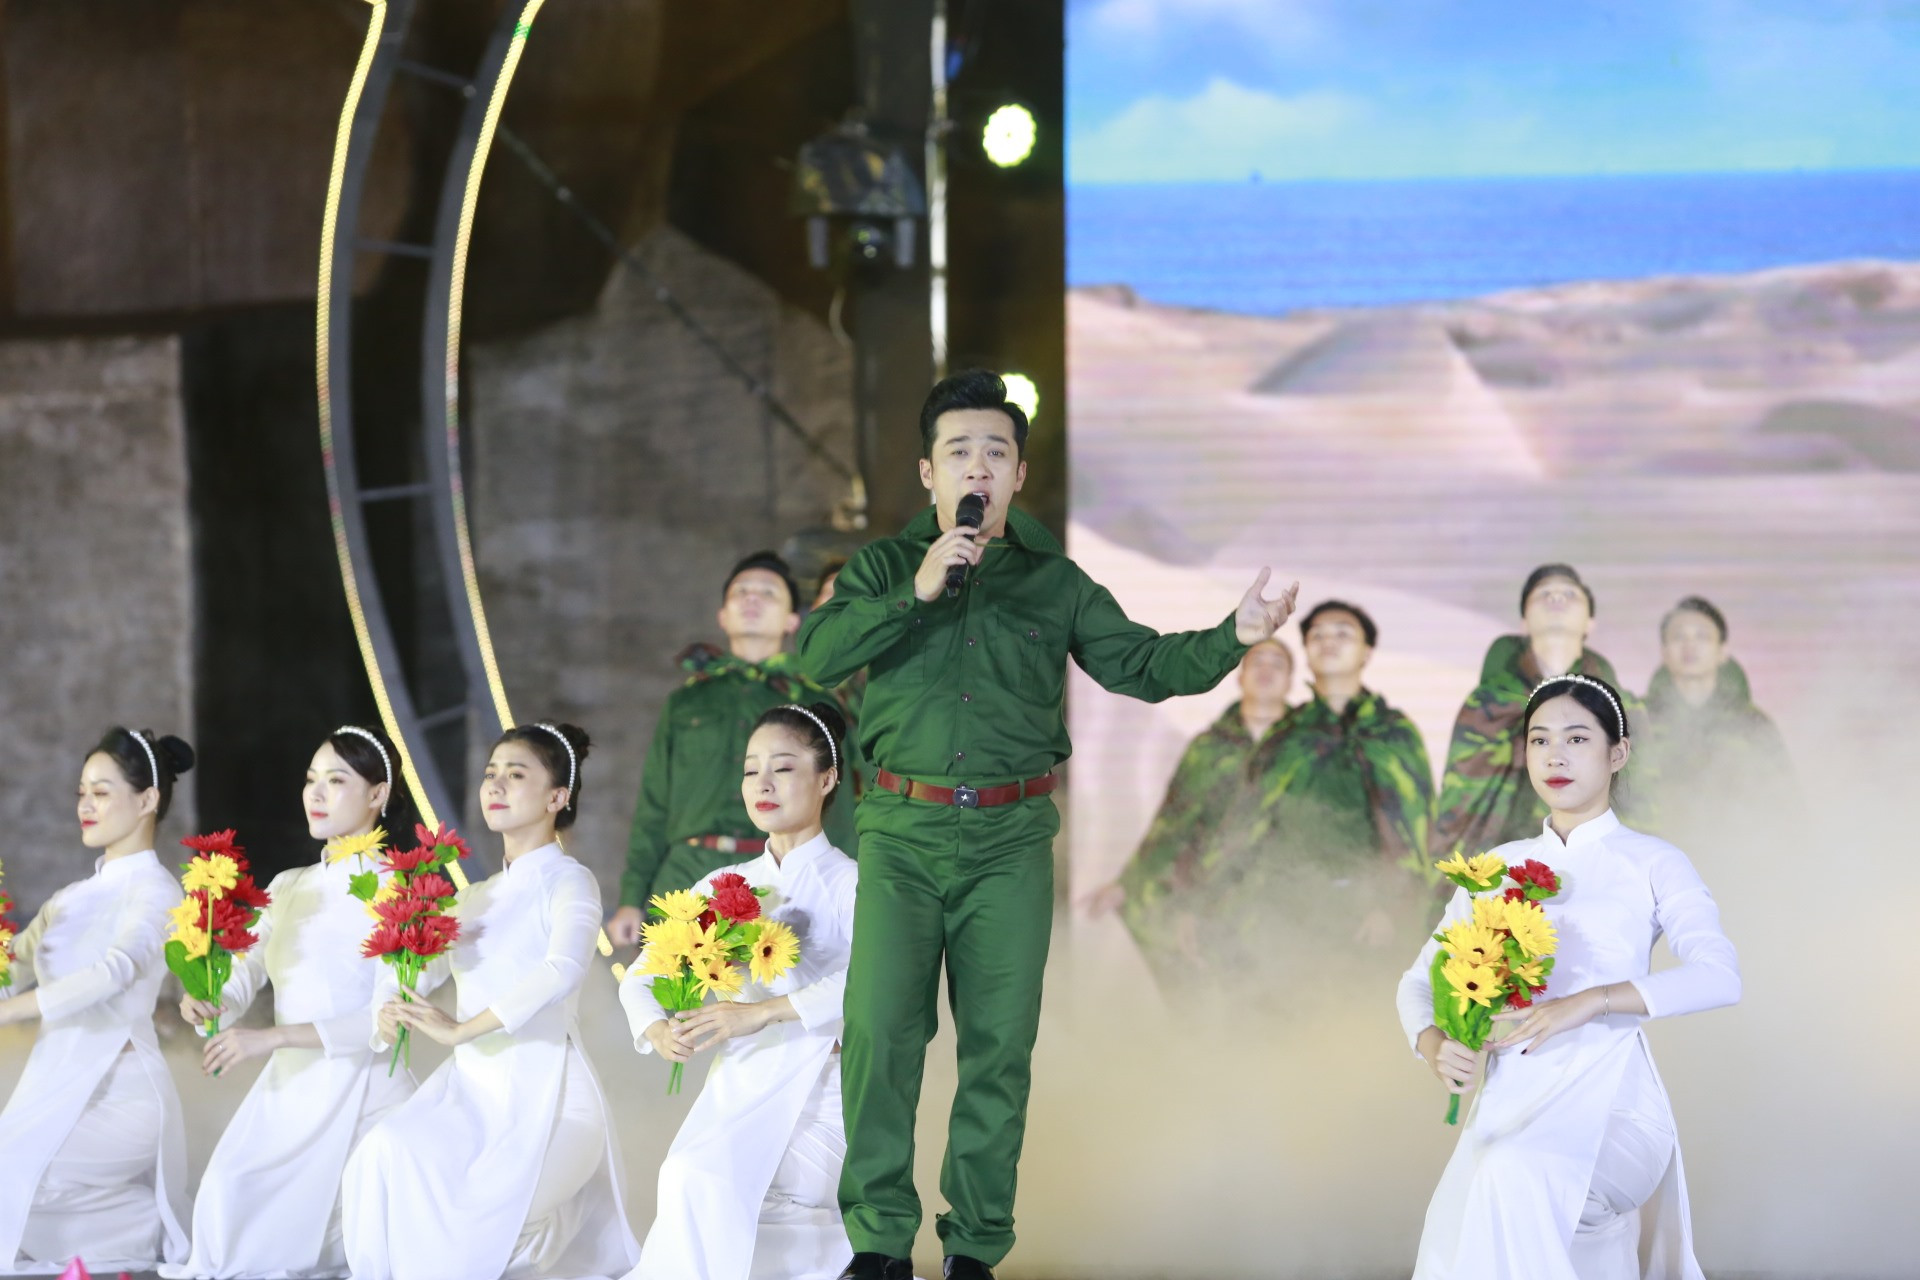 Ca sĩ Quang Hào trình diễn ca khúc “Vết chân tròn trên cát“. Phần trình diễn có sự tham gia của nhiều cựu binh Quảng Nam.